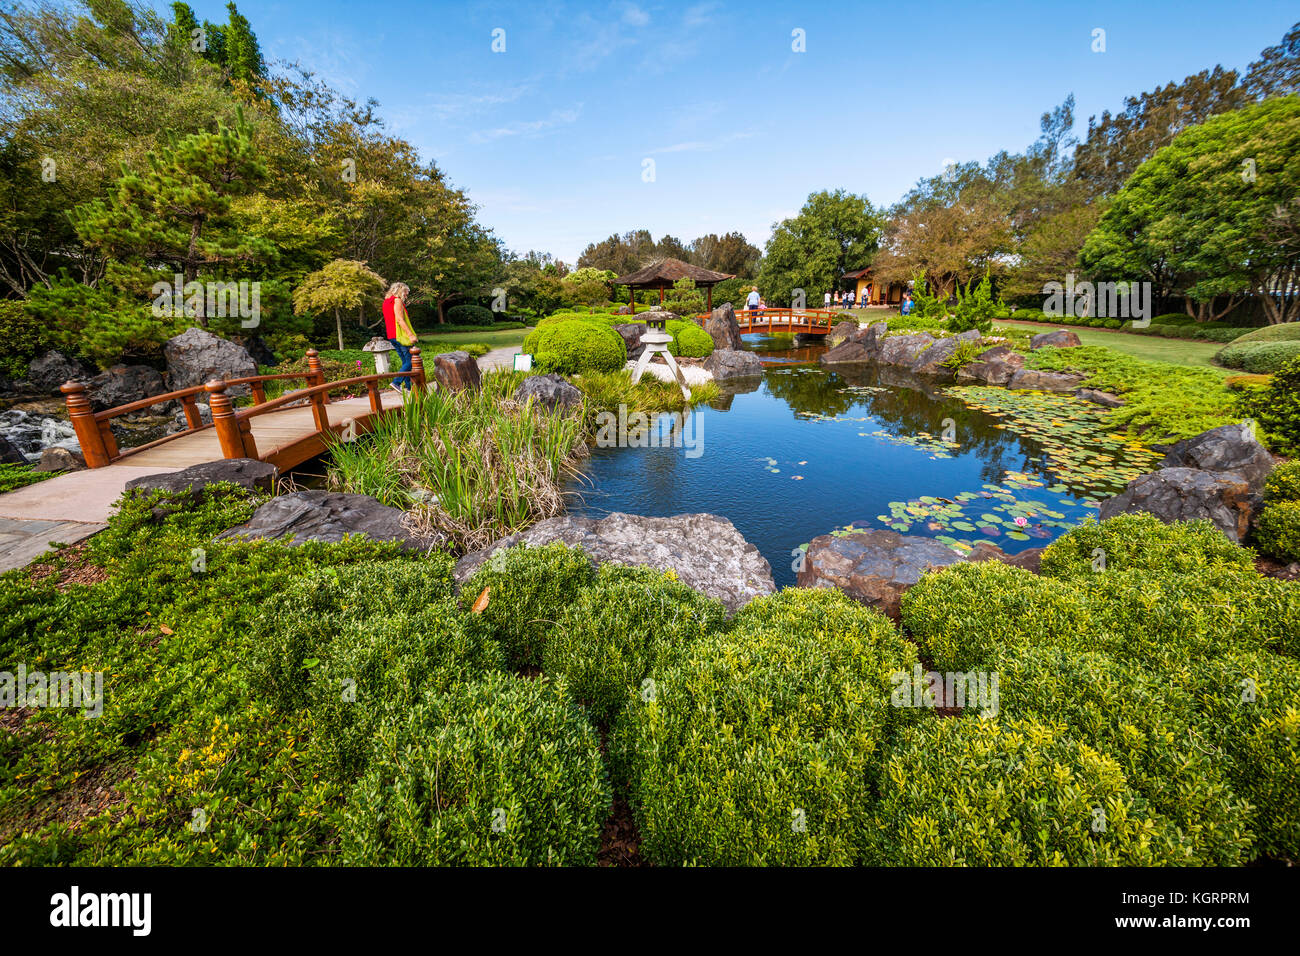 Australia, Nueva Gales del Sur, de la Costa Central, Gosford/Edogawa jardín conmemorativo Foto de stock